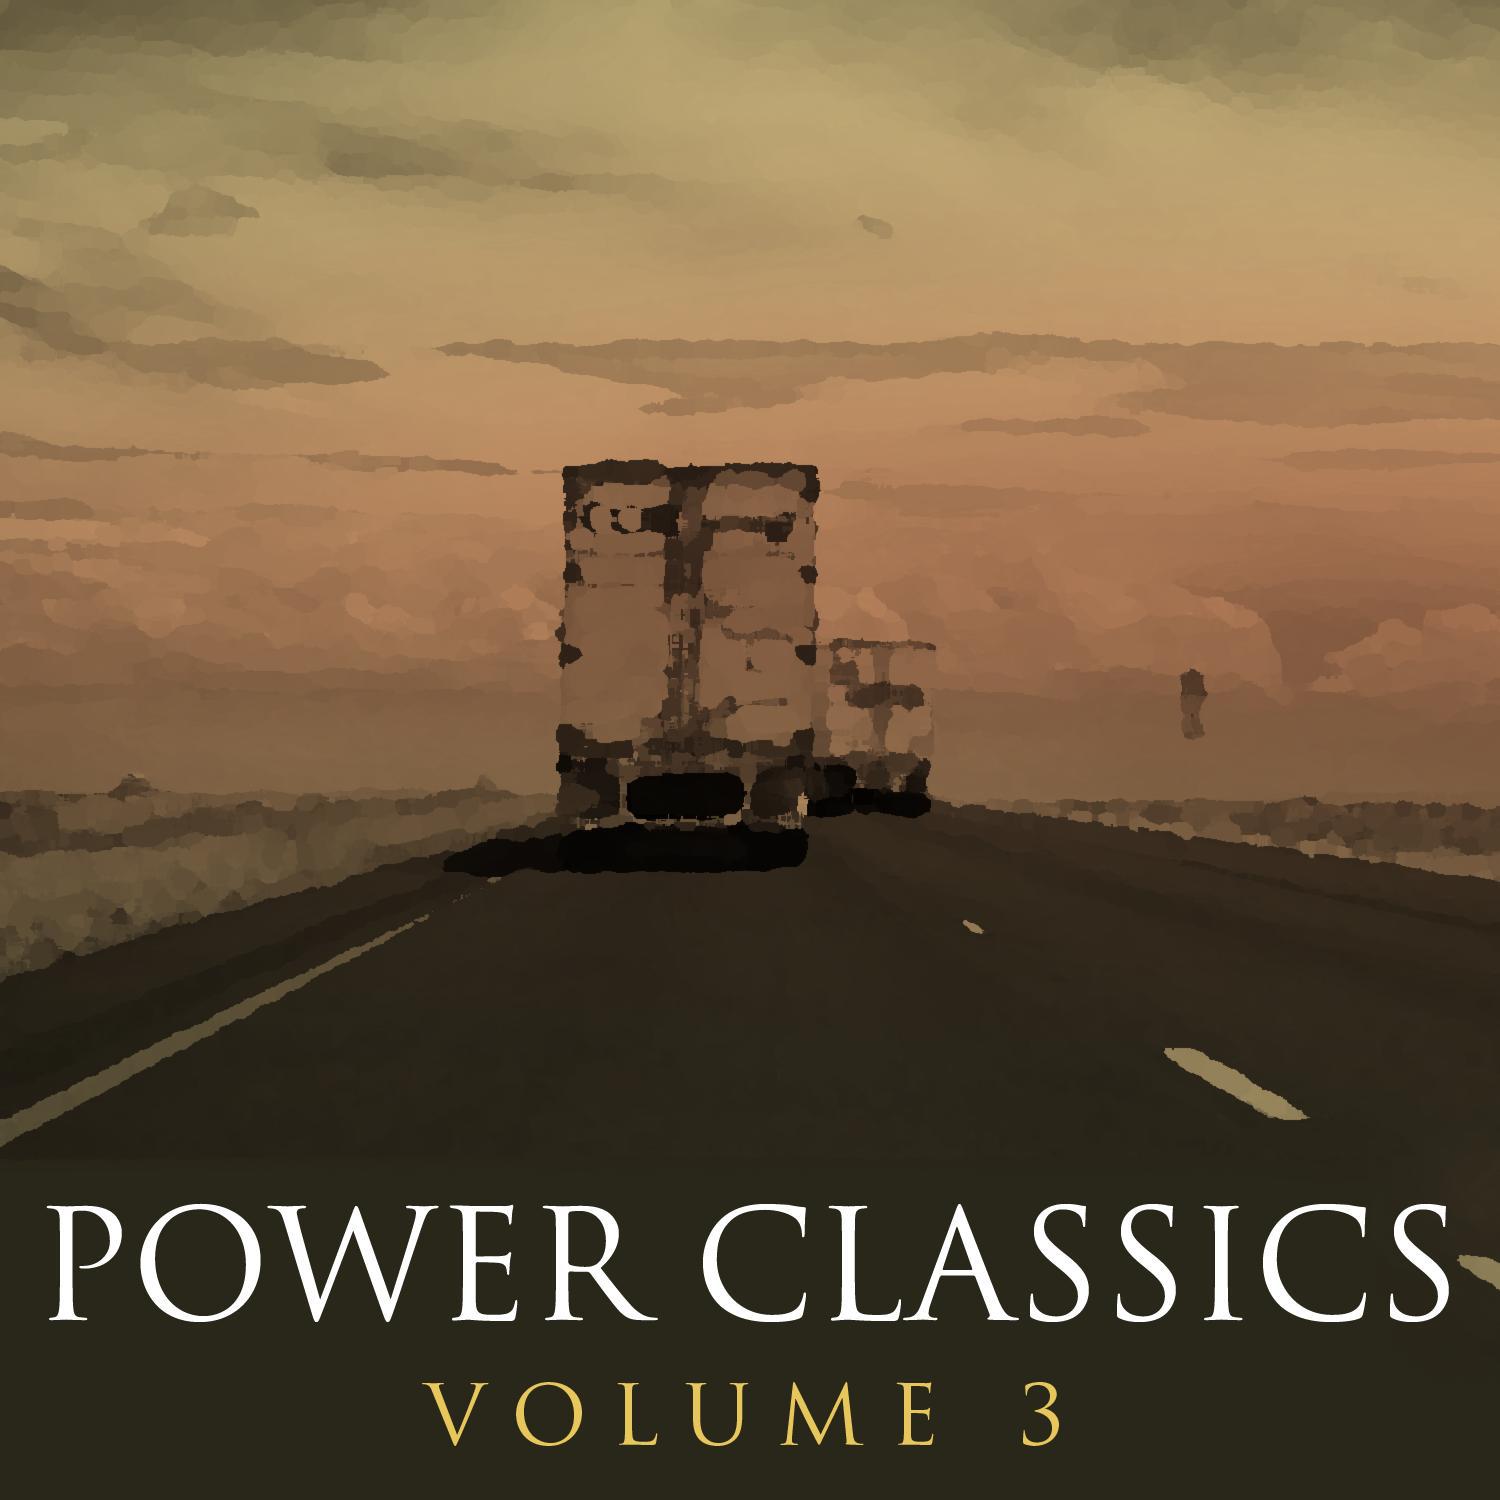 Power Classics Vol 3